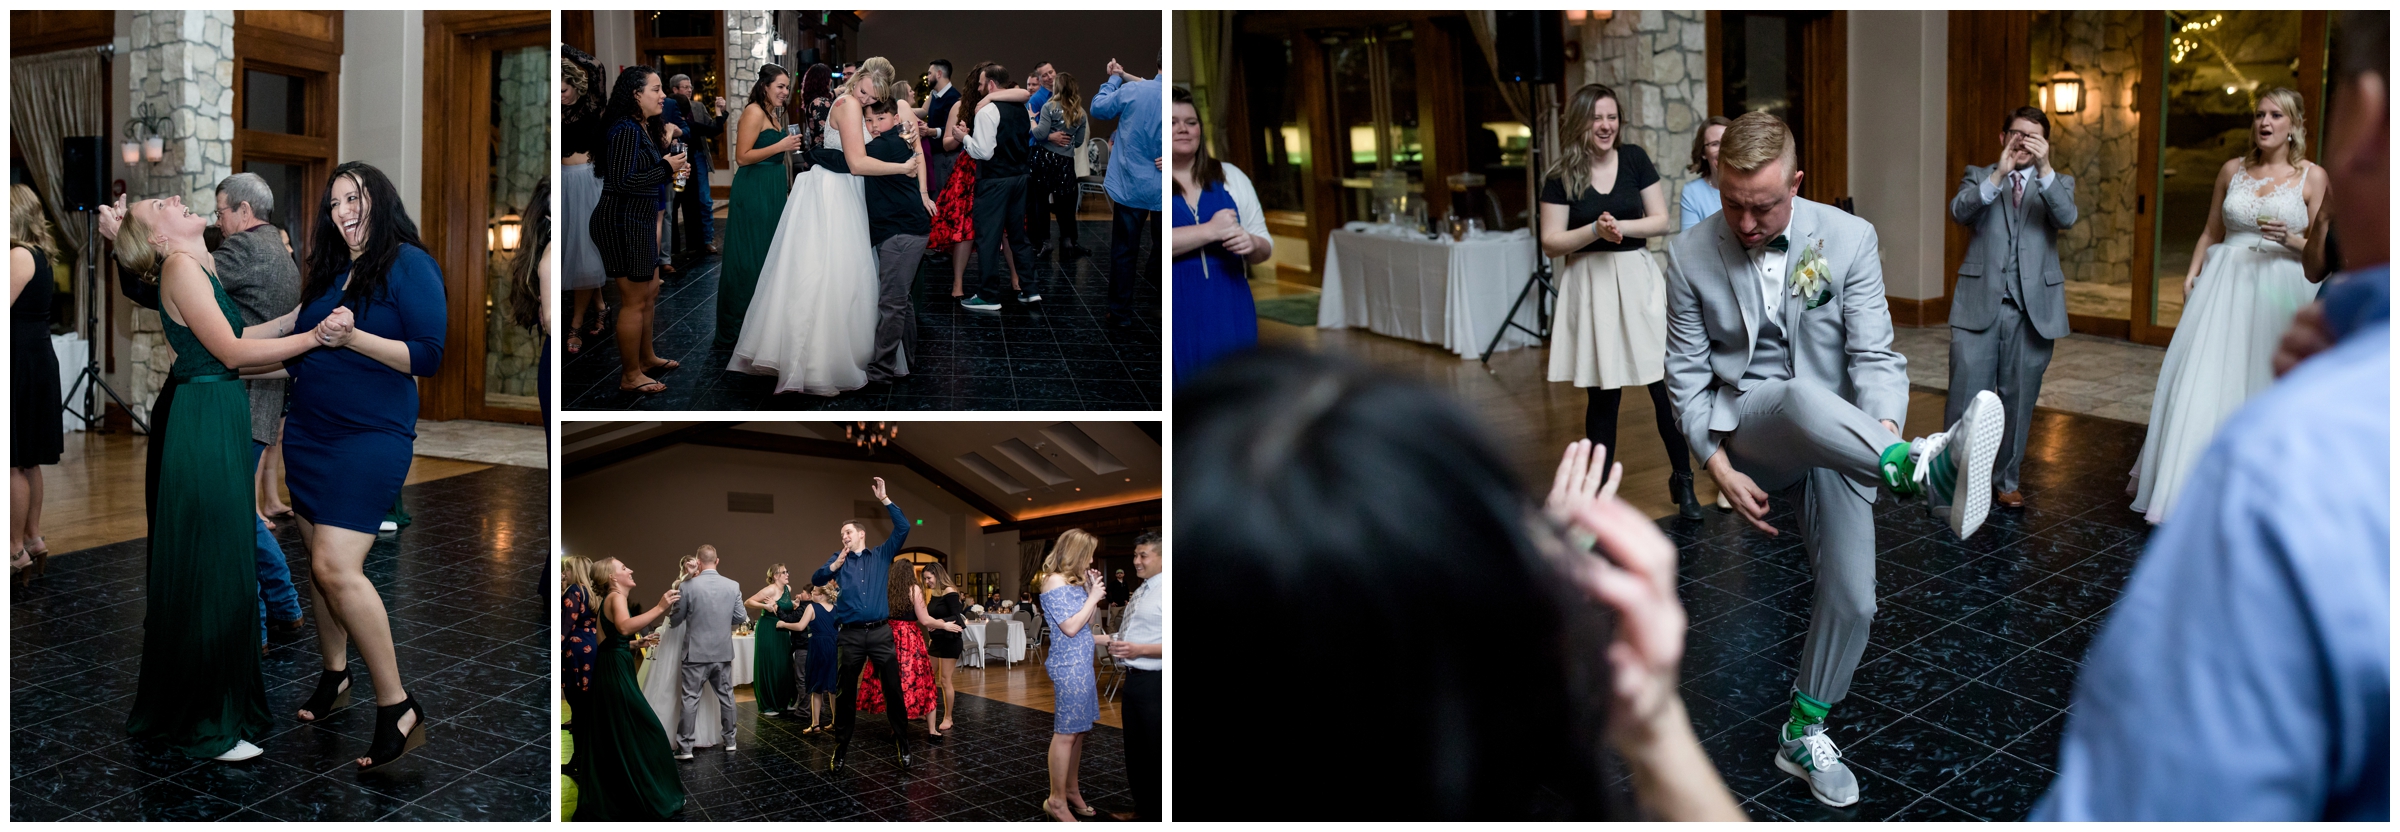 wedding guests dancing at Cielo Colorado reception 